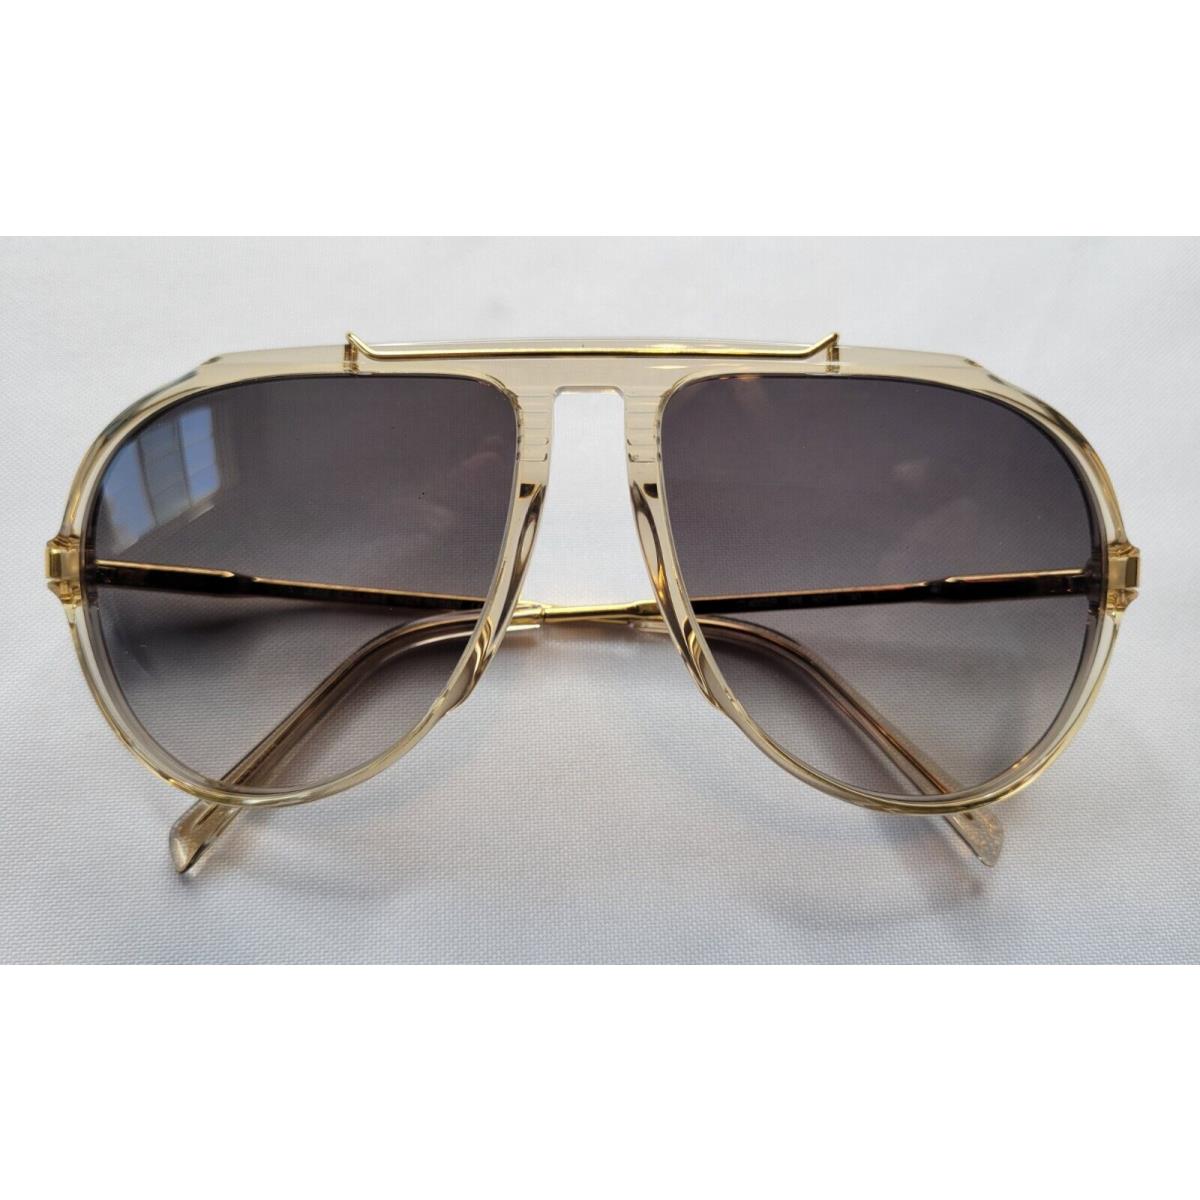 Celine sunglasses  - Brown/Gold Frame, Gray Lens 0